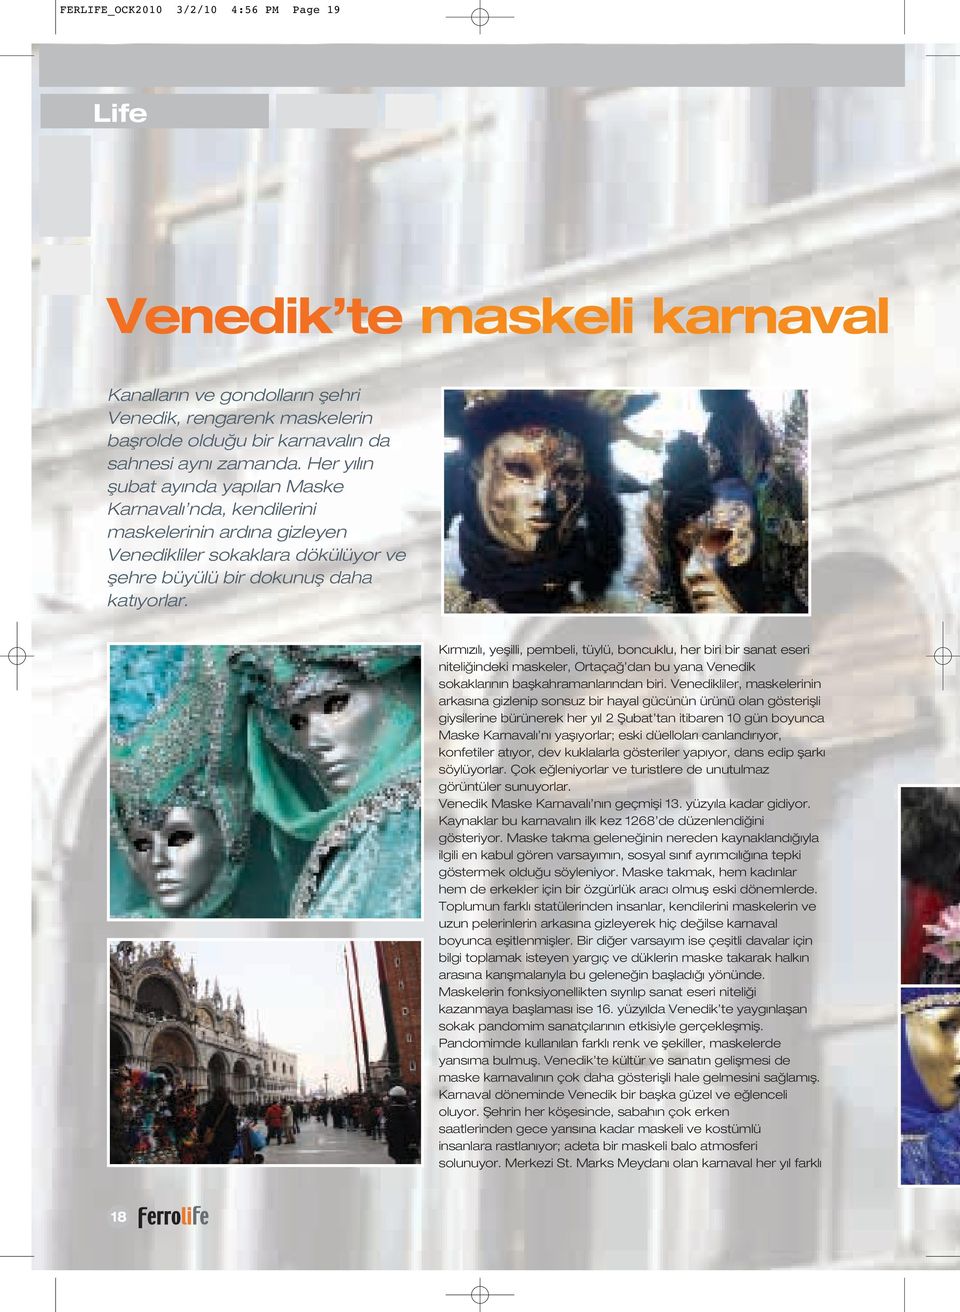 K rm z l, yeflilli, pembeli, tüylü, boncuklu, her biri bir sanat eseri niteli indeki maskeler, Ortaça dan bu yana Venedik sokaklar n n baflkahramanlar ndan biri.